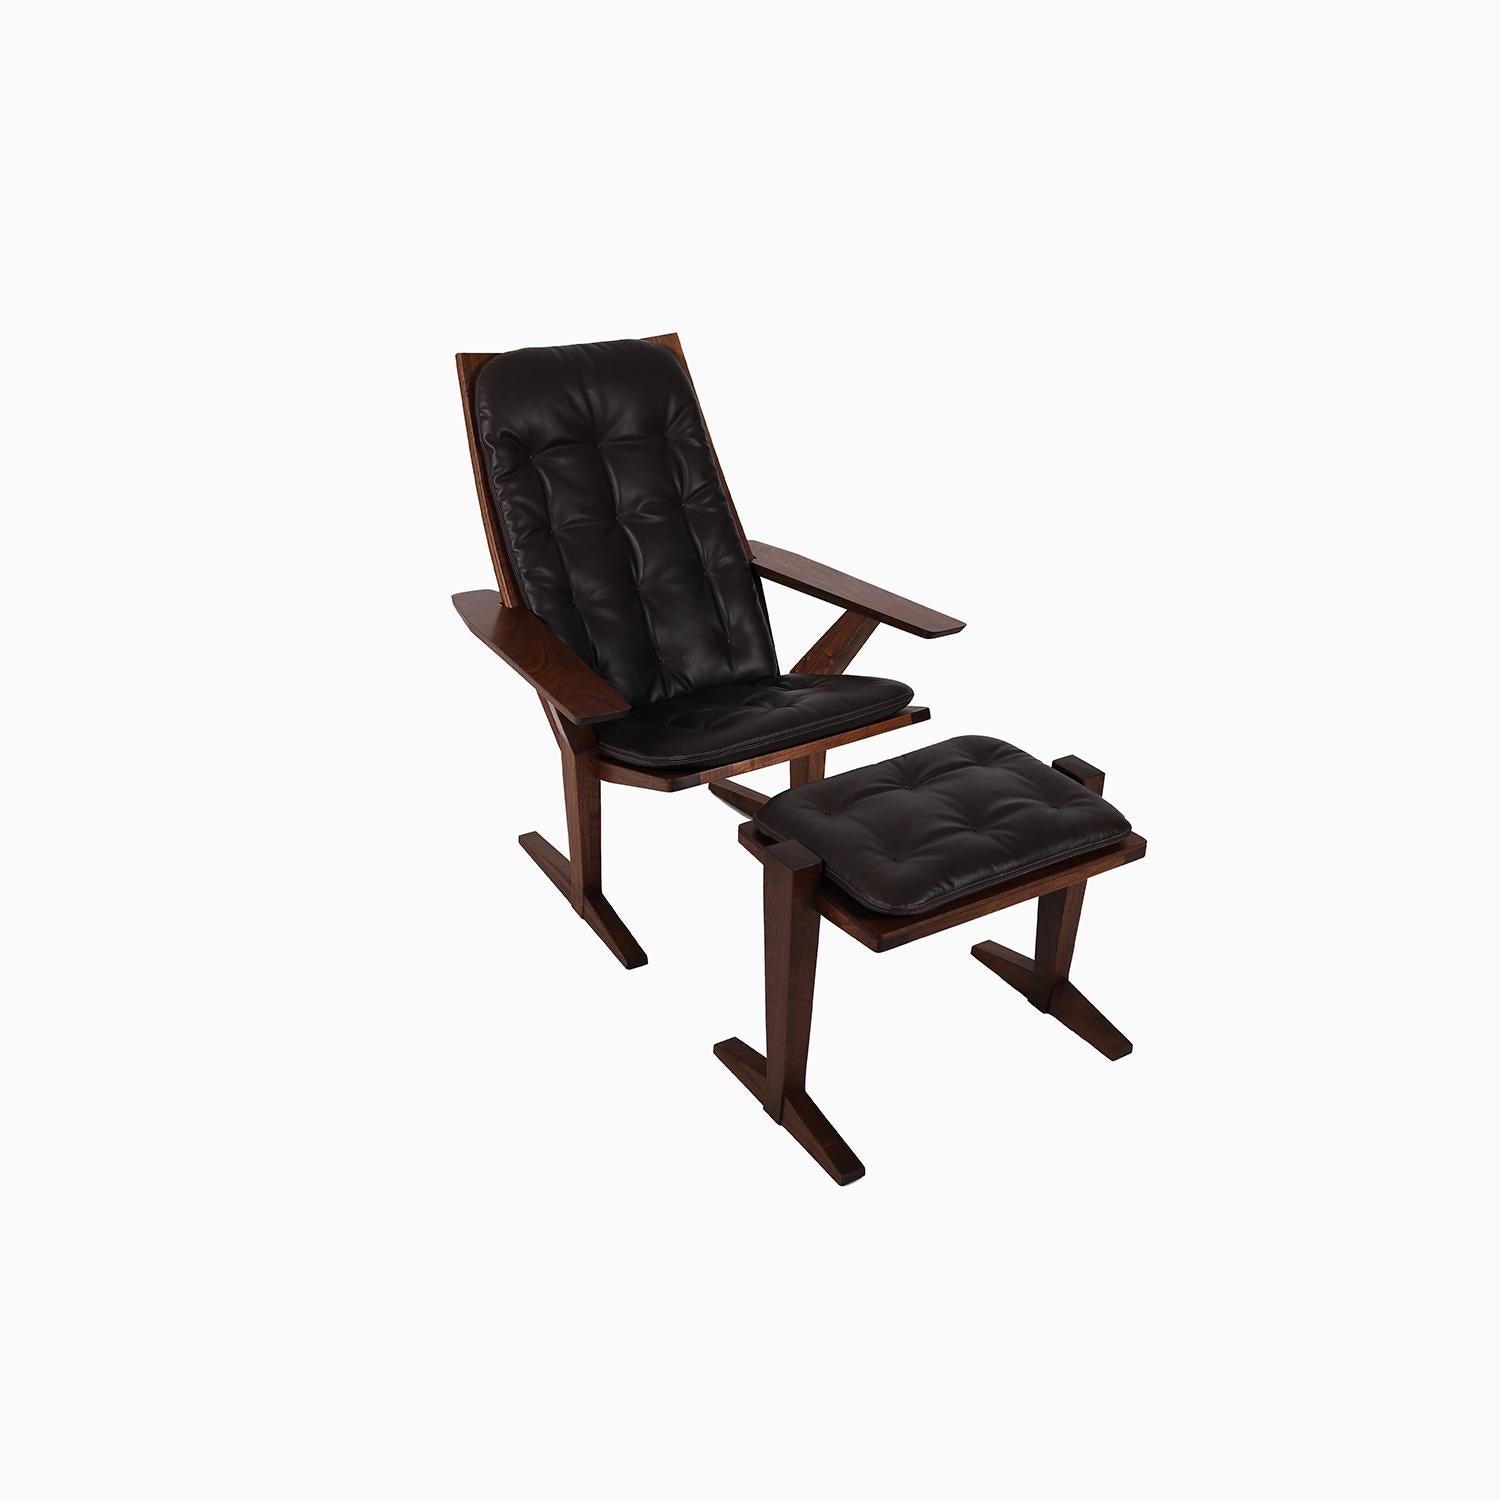 Ein neues Sitzmöbel für den Innenbereich, das an einen verfeinerten Adirondack-Stuhl erinnert.   Diese Lounge und der Hocker wurden aus altem Schwarznussbaum handgefertigt und mit Öl behandelt.    Getuftete Polsterung aus geschmeidigem